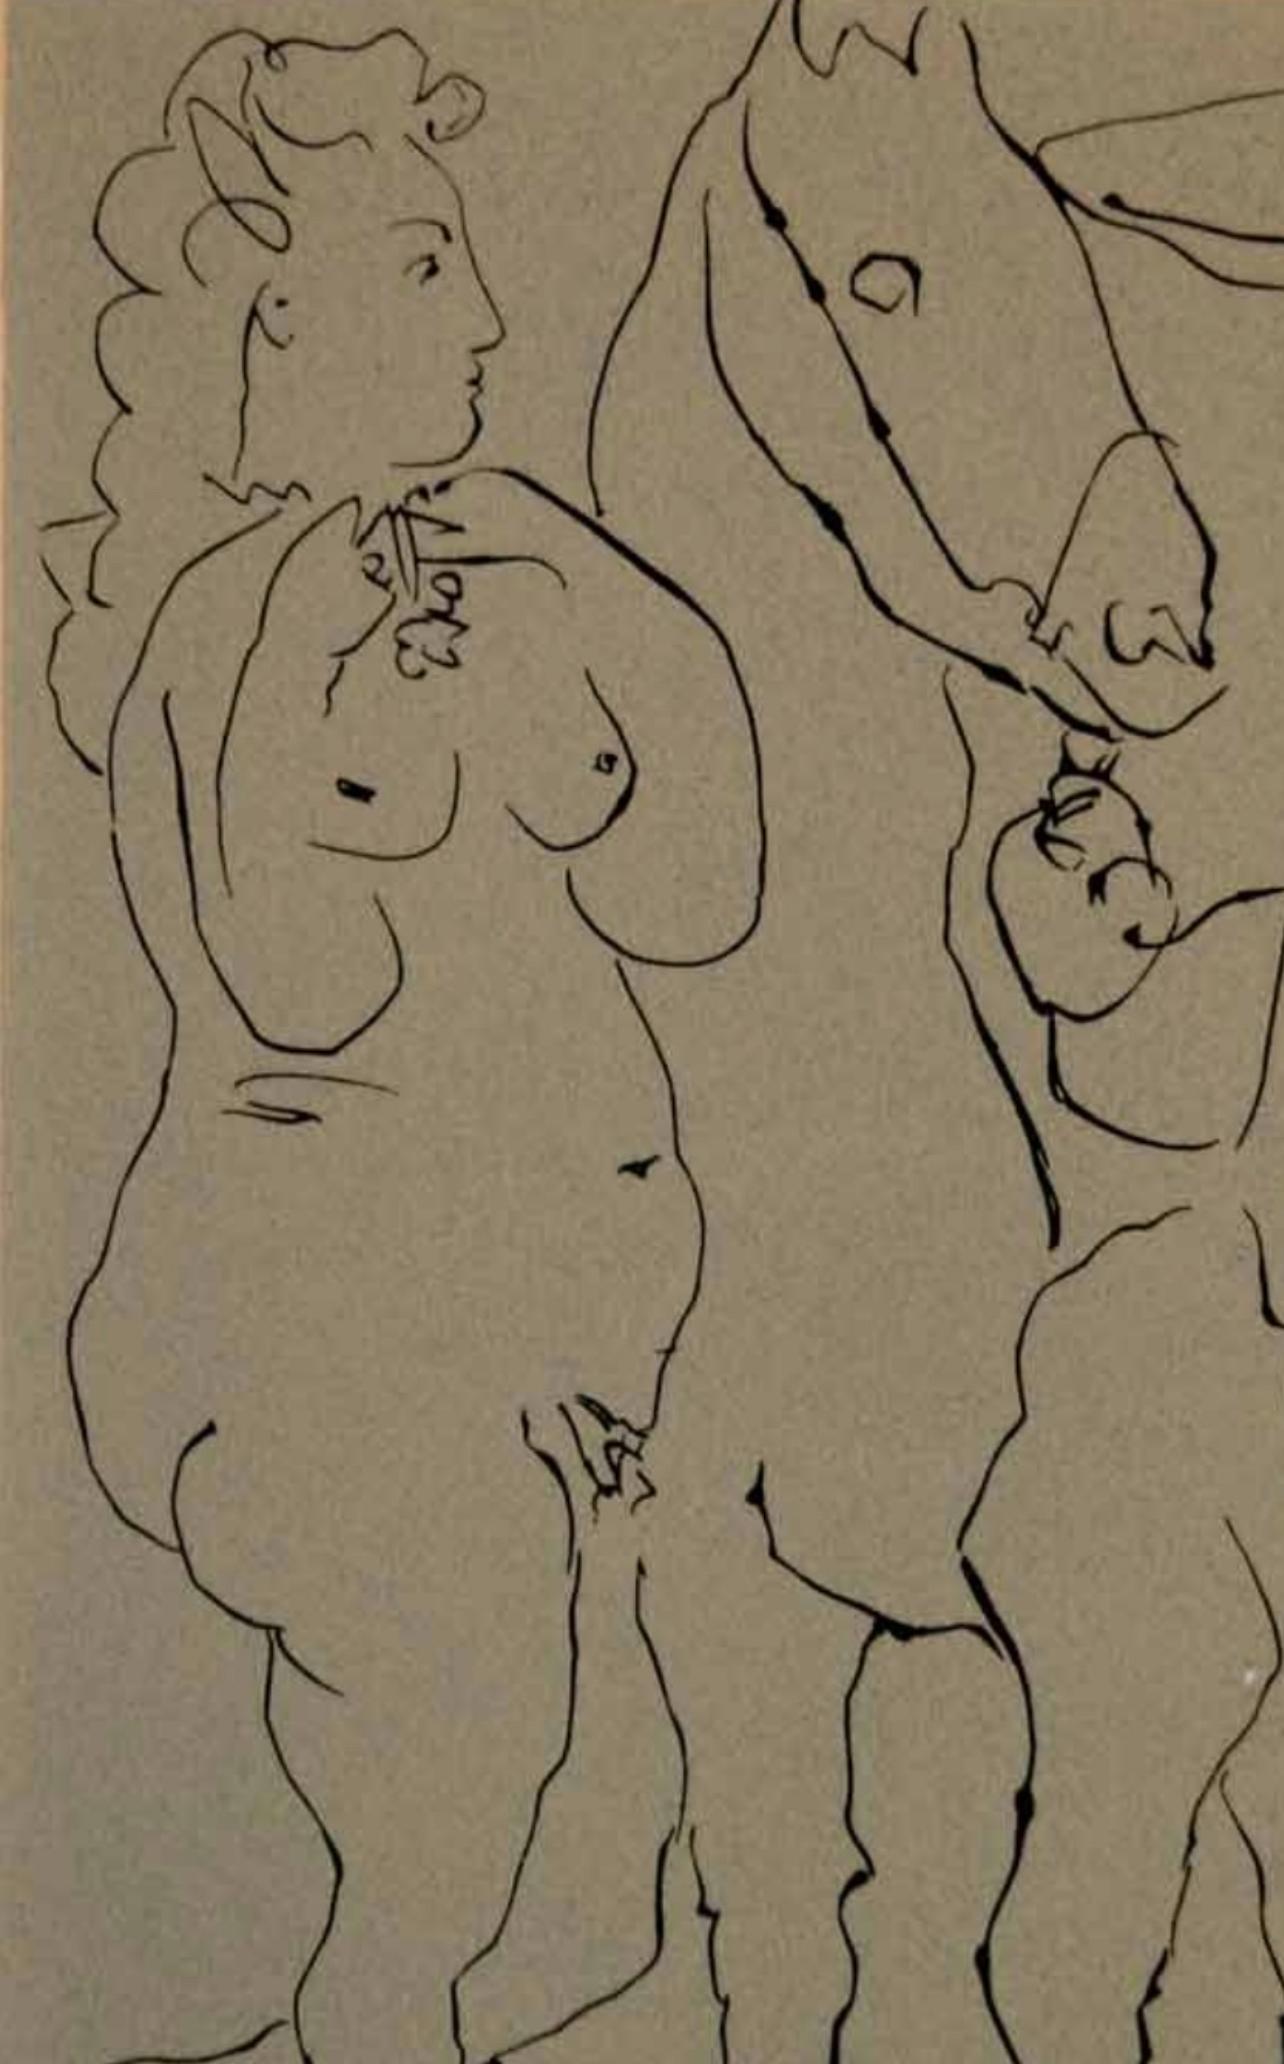 Picasso, Picador, Femme et cheval, Éditions Cercle d'Art (d'après) - Print de Pablo Picasso